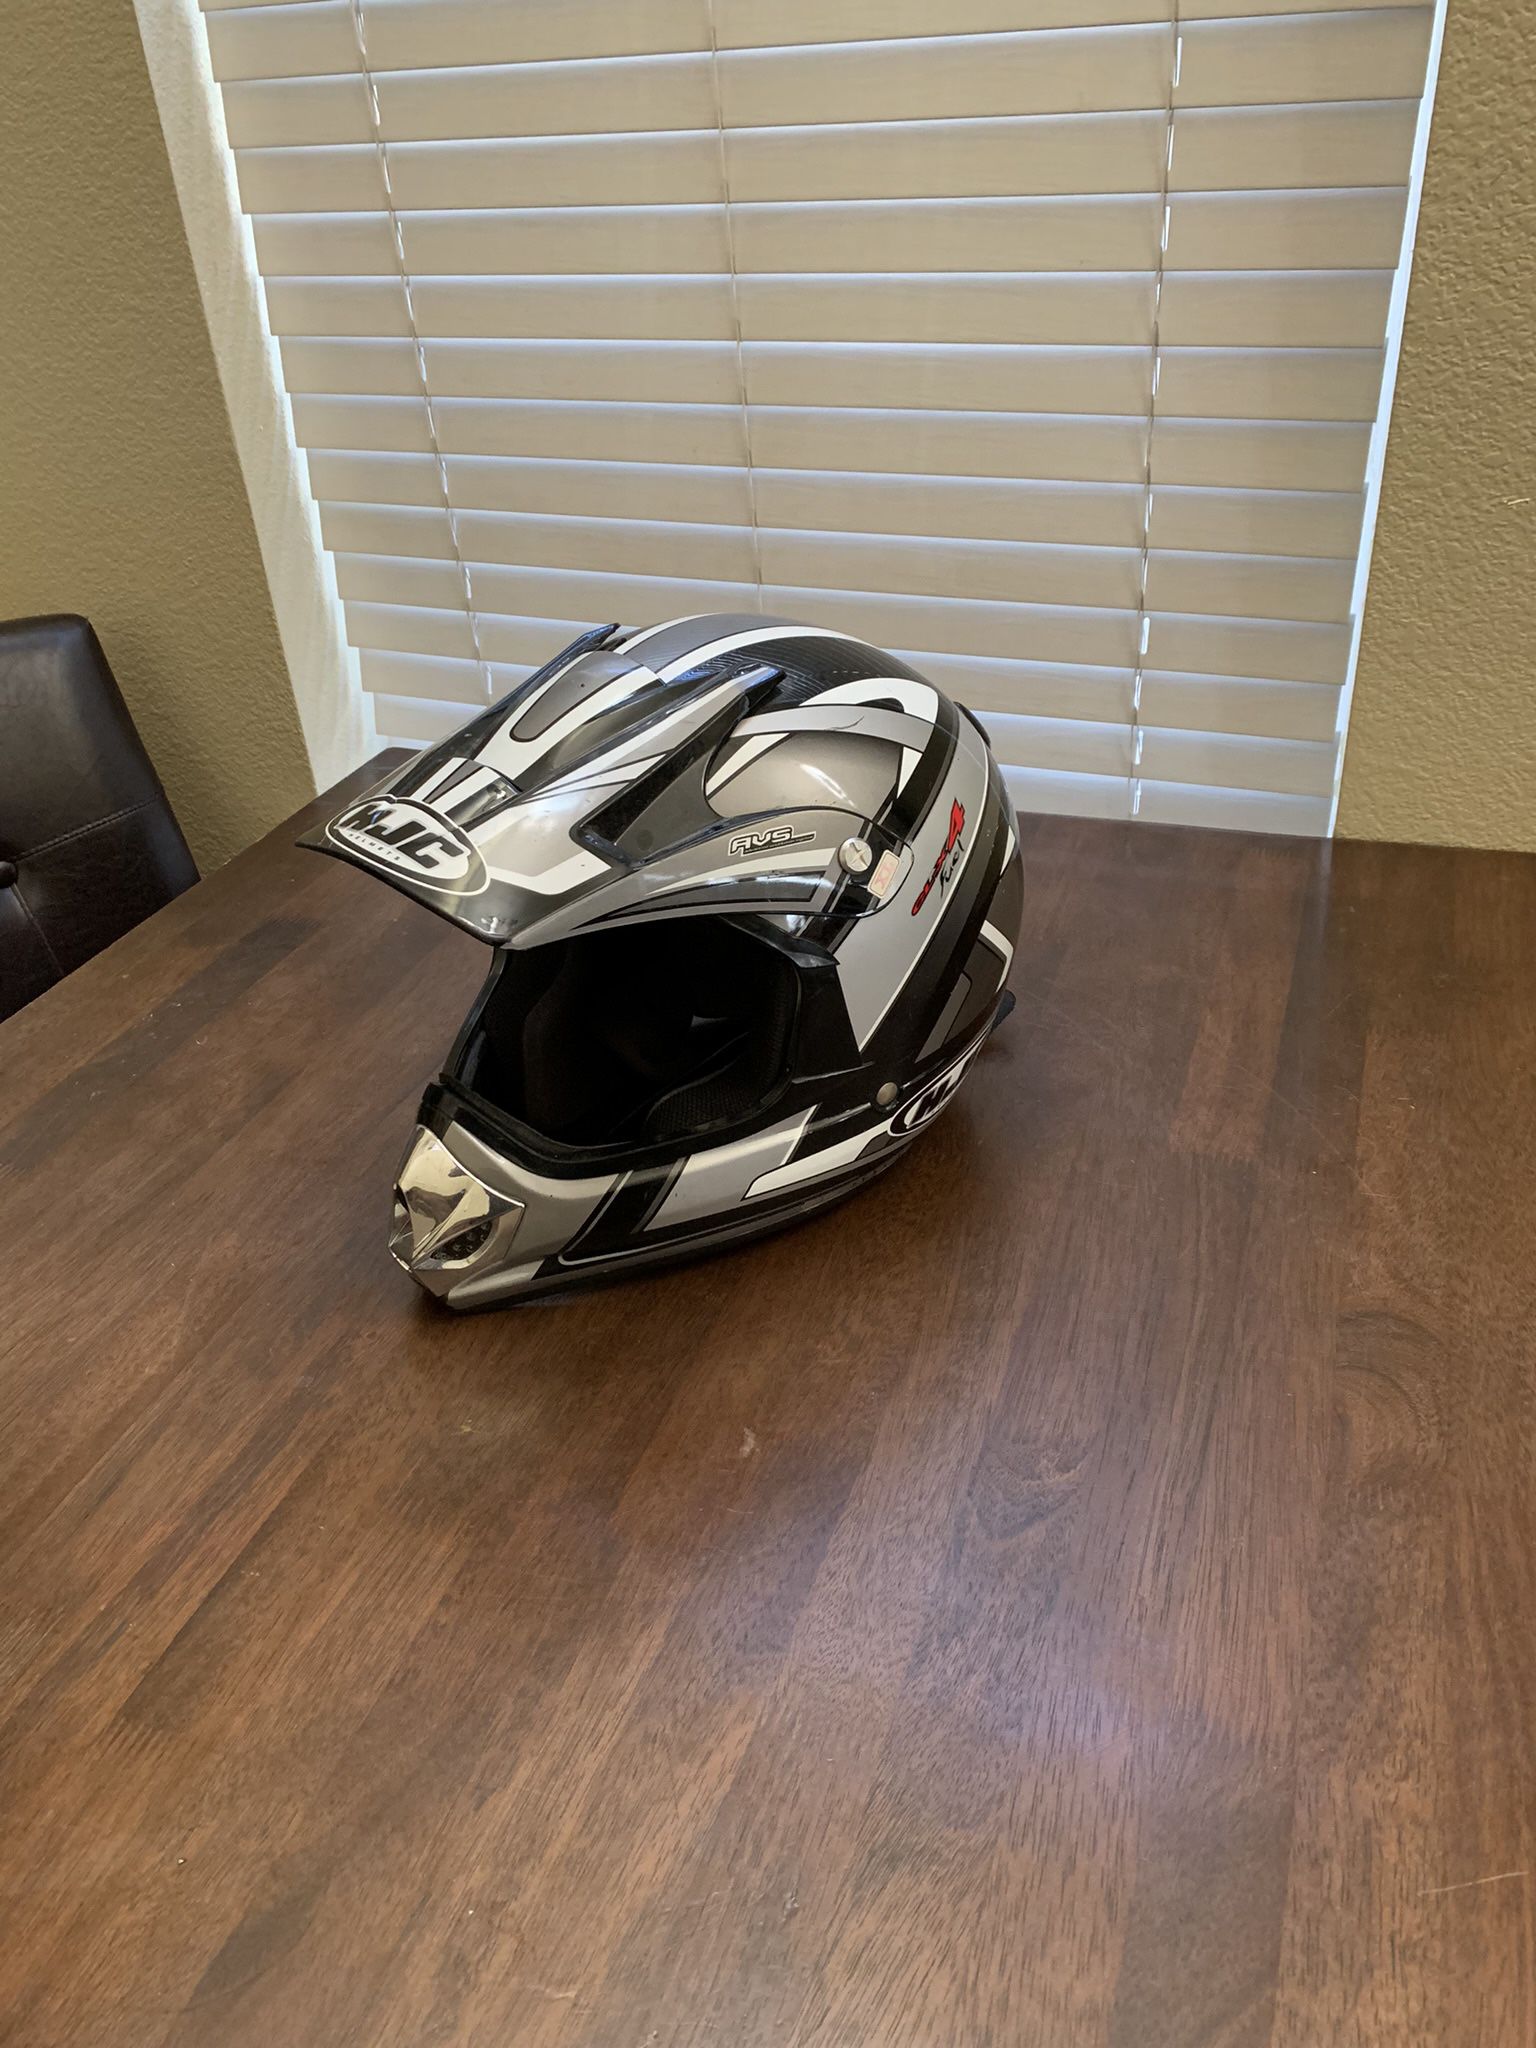 HJC Motocross Dirtbike Helmet Size XL